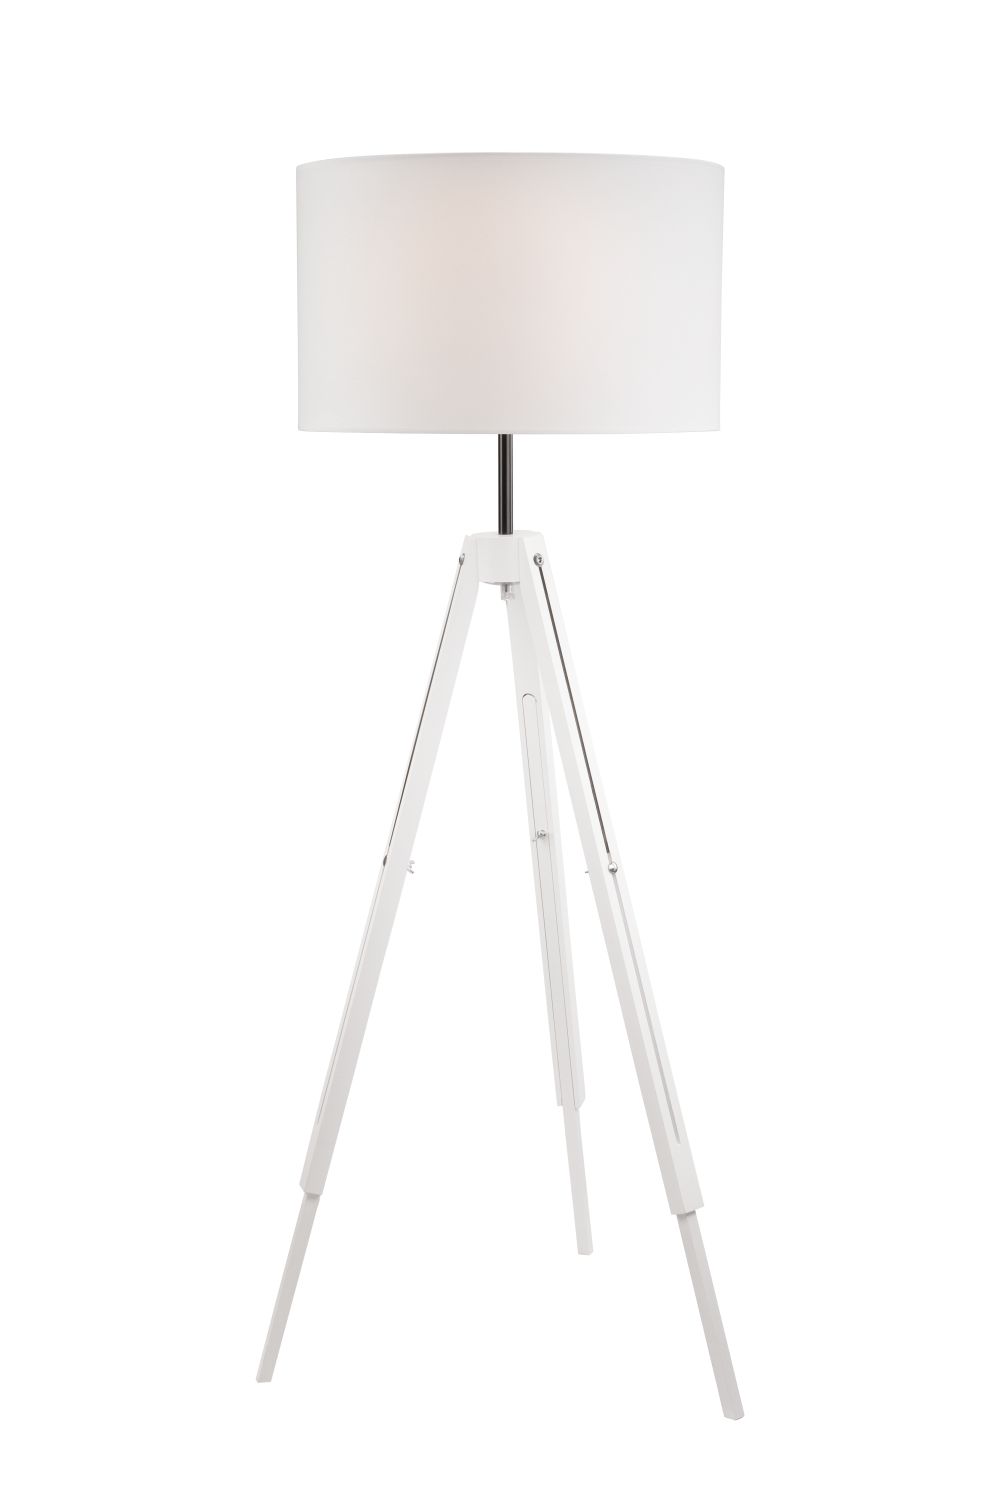 Dreibein Stehlampe Holz Weiß 110cm Wohnzimmer